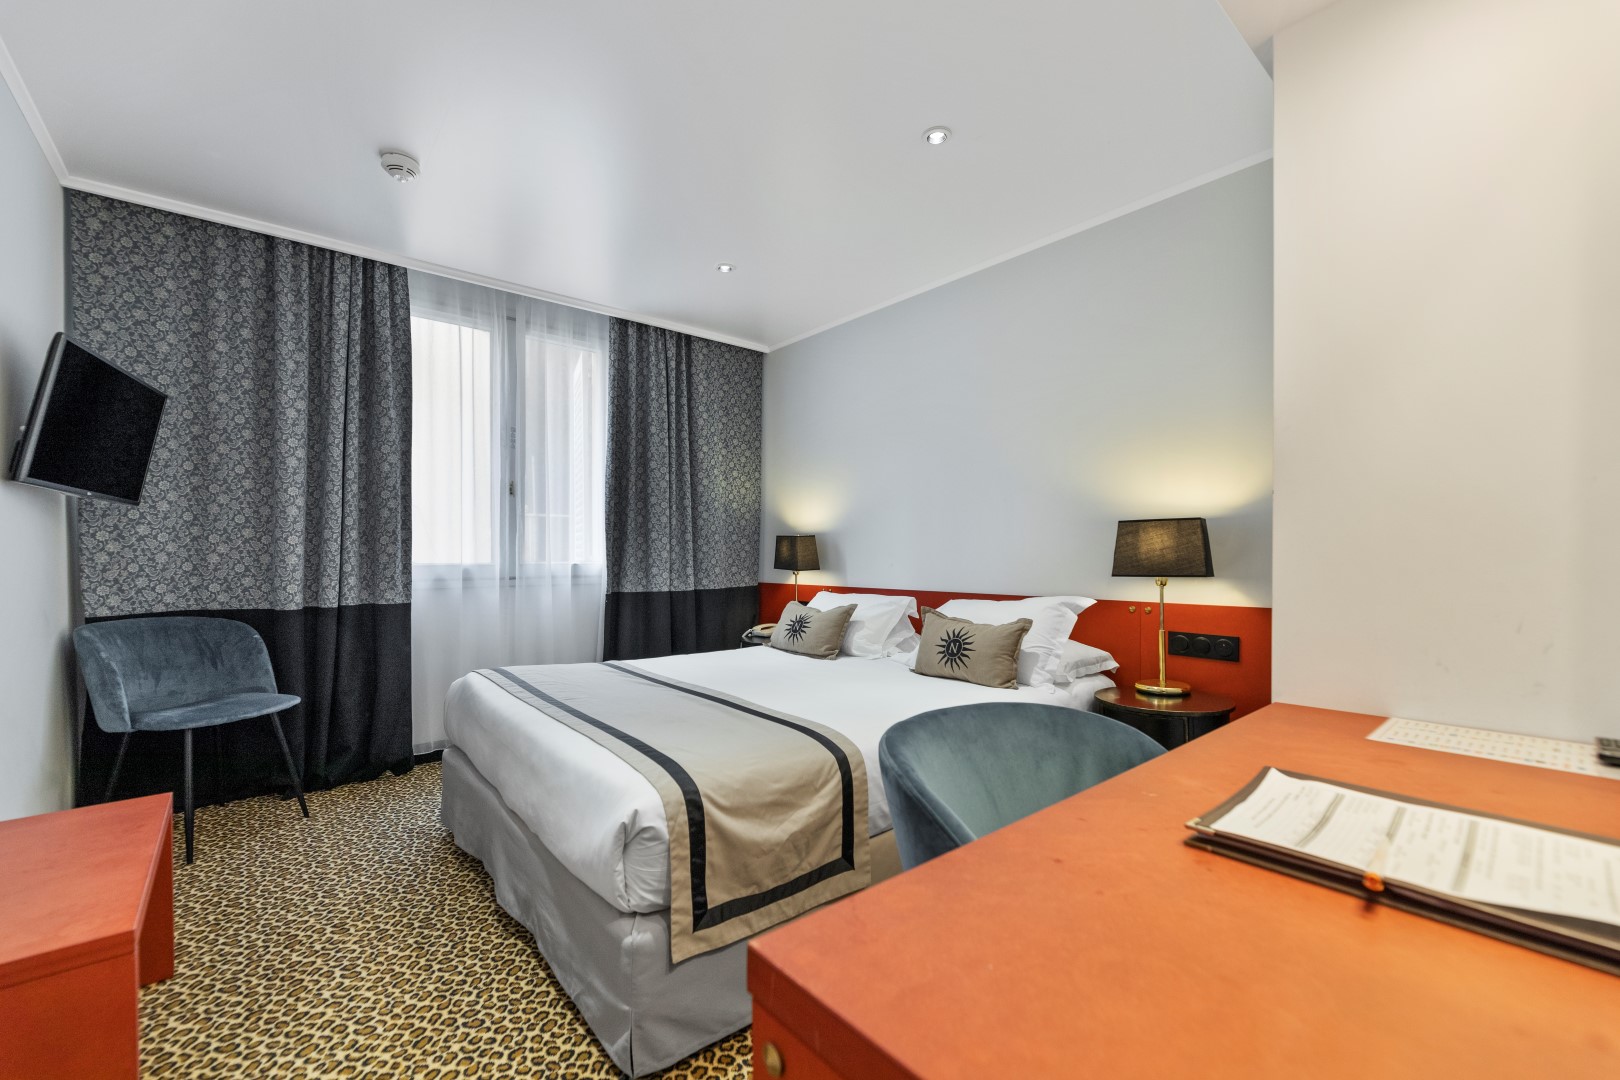 Le camere dell'hotel : comodità e calma